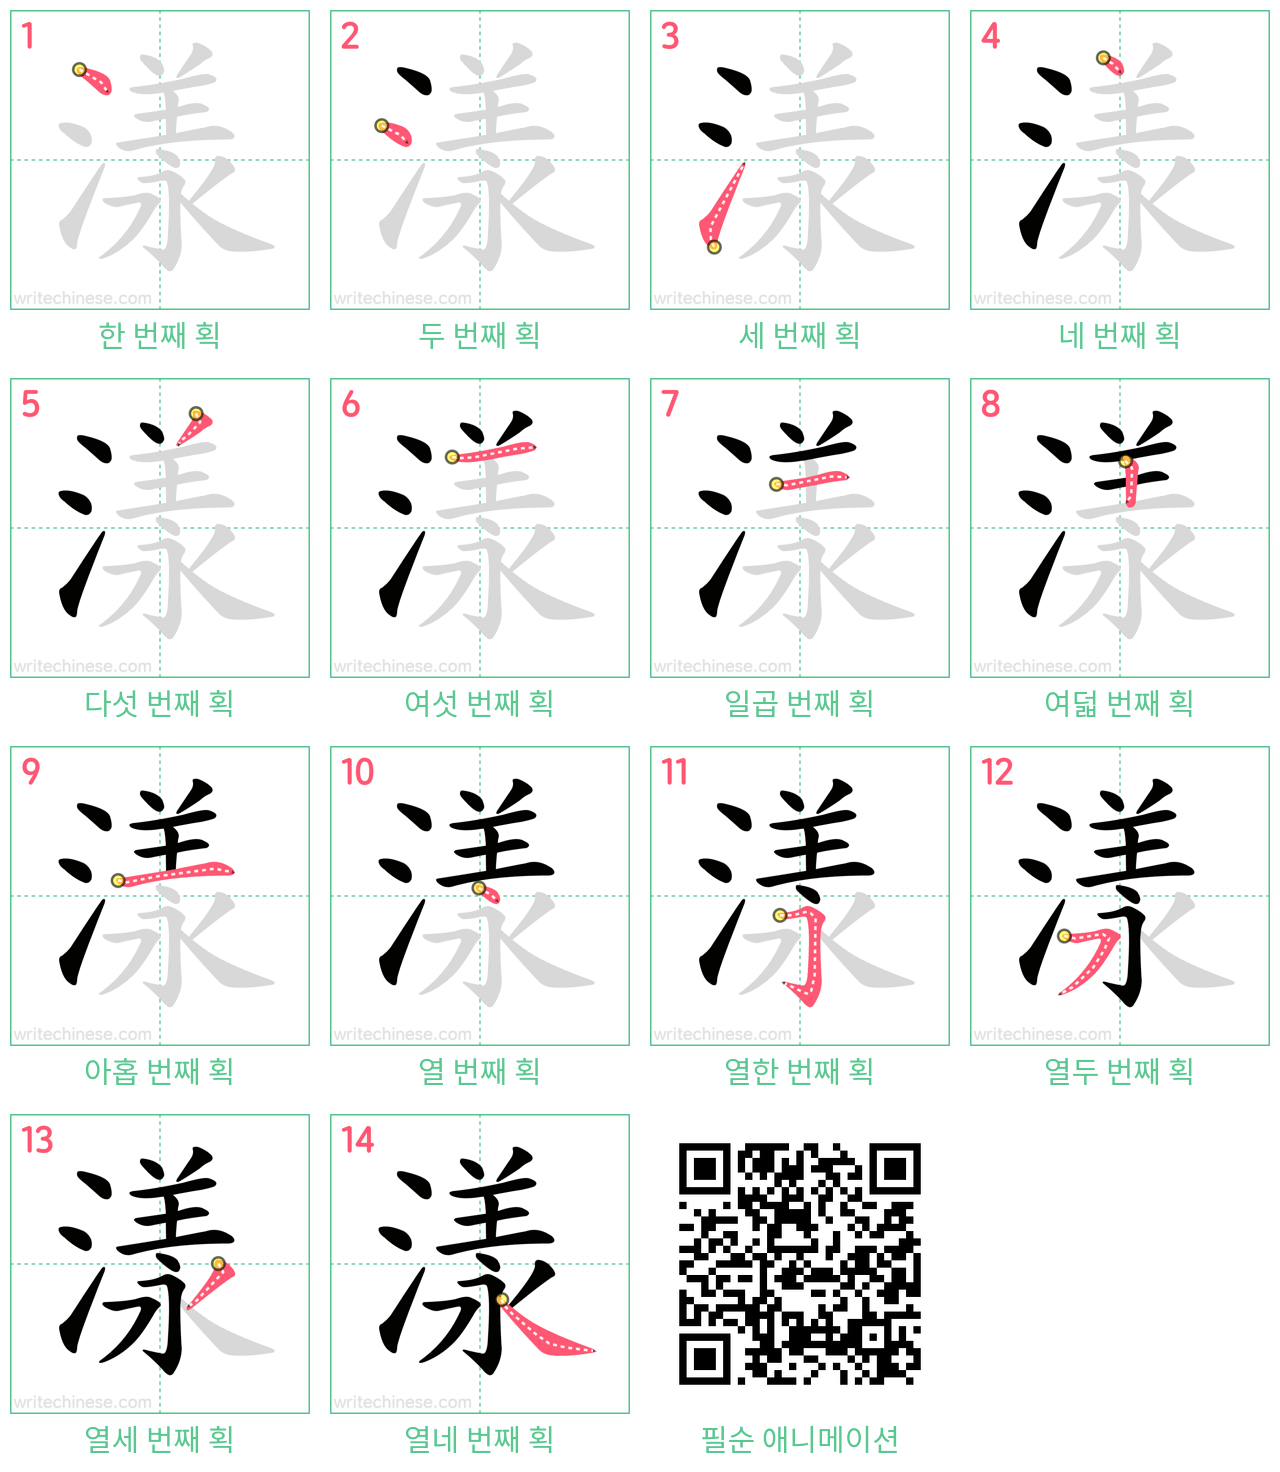 漾 step-by-step stroke order diagrams